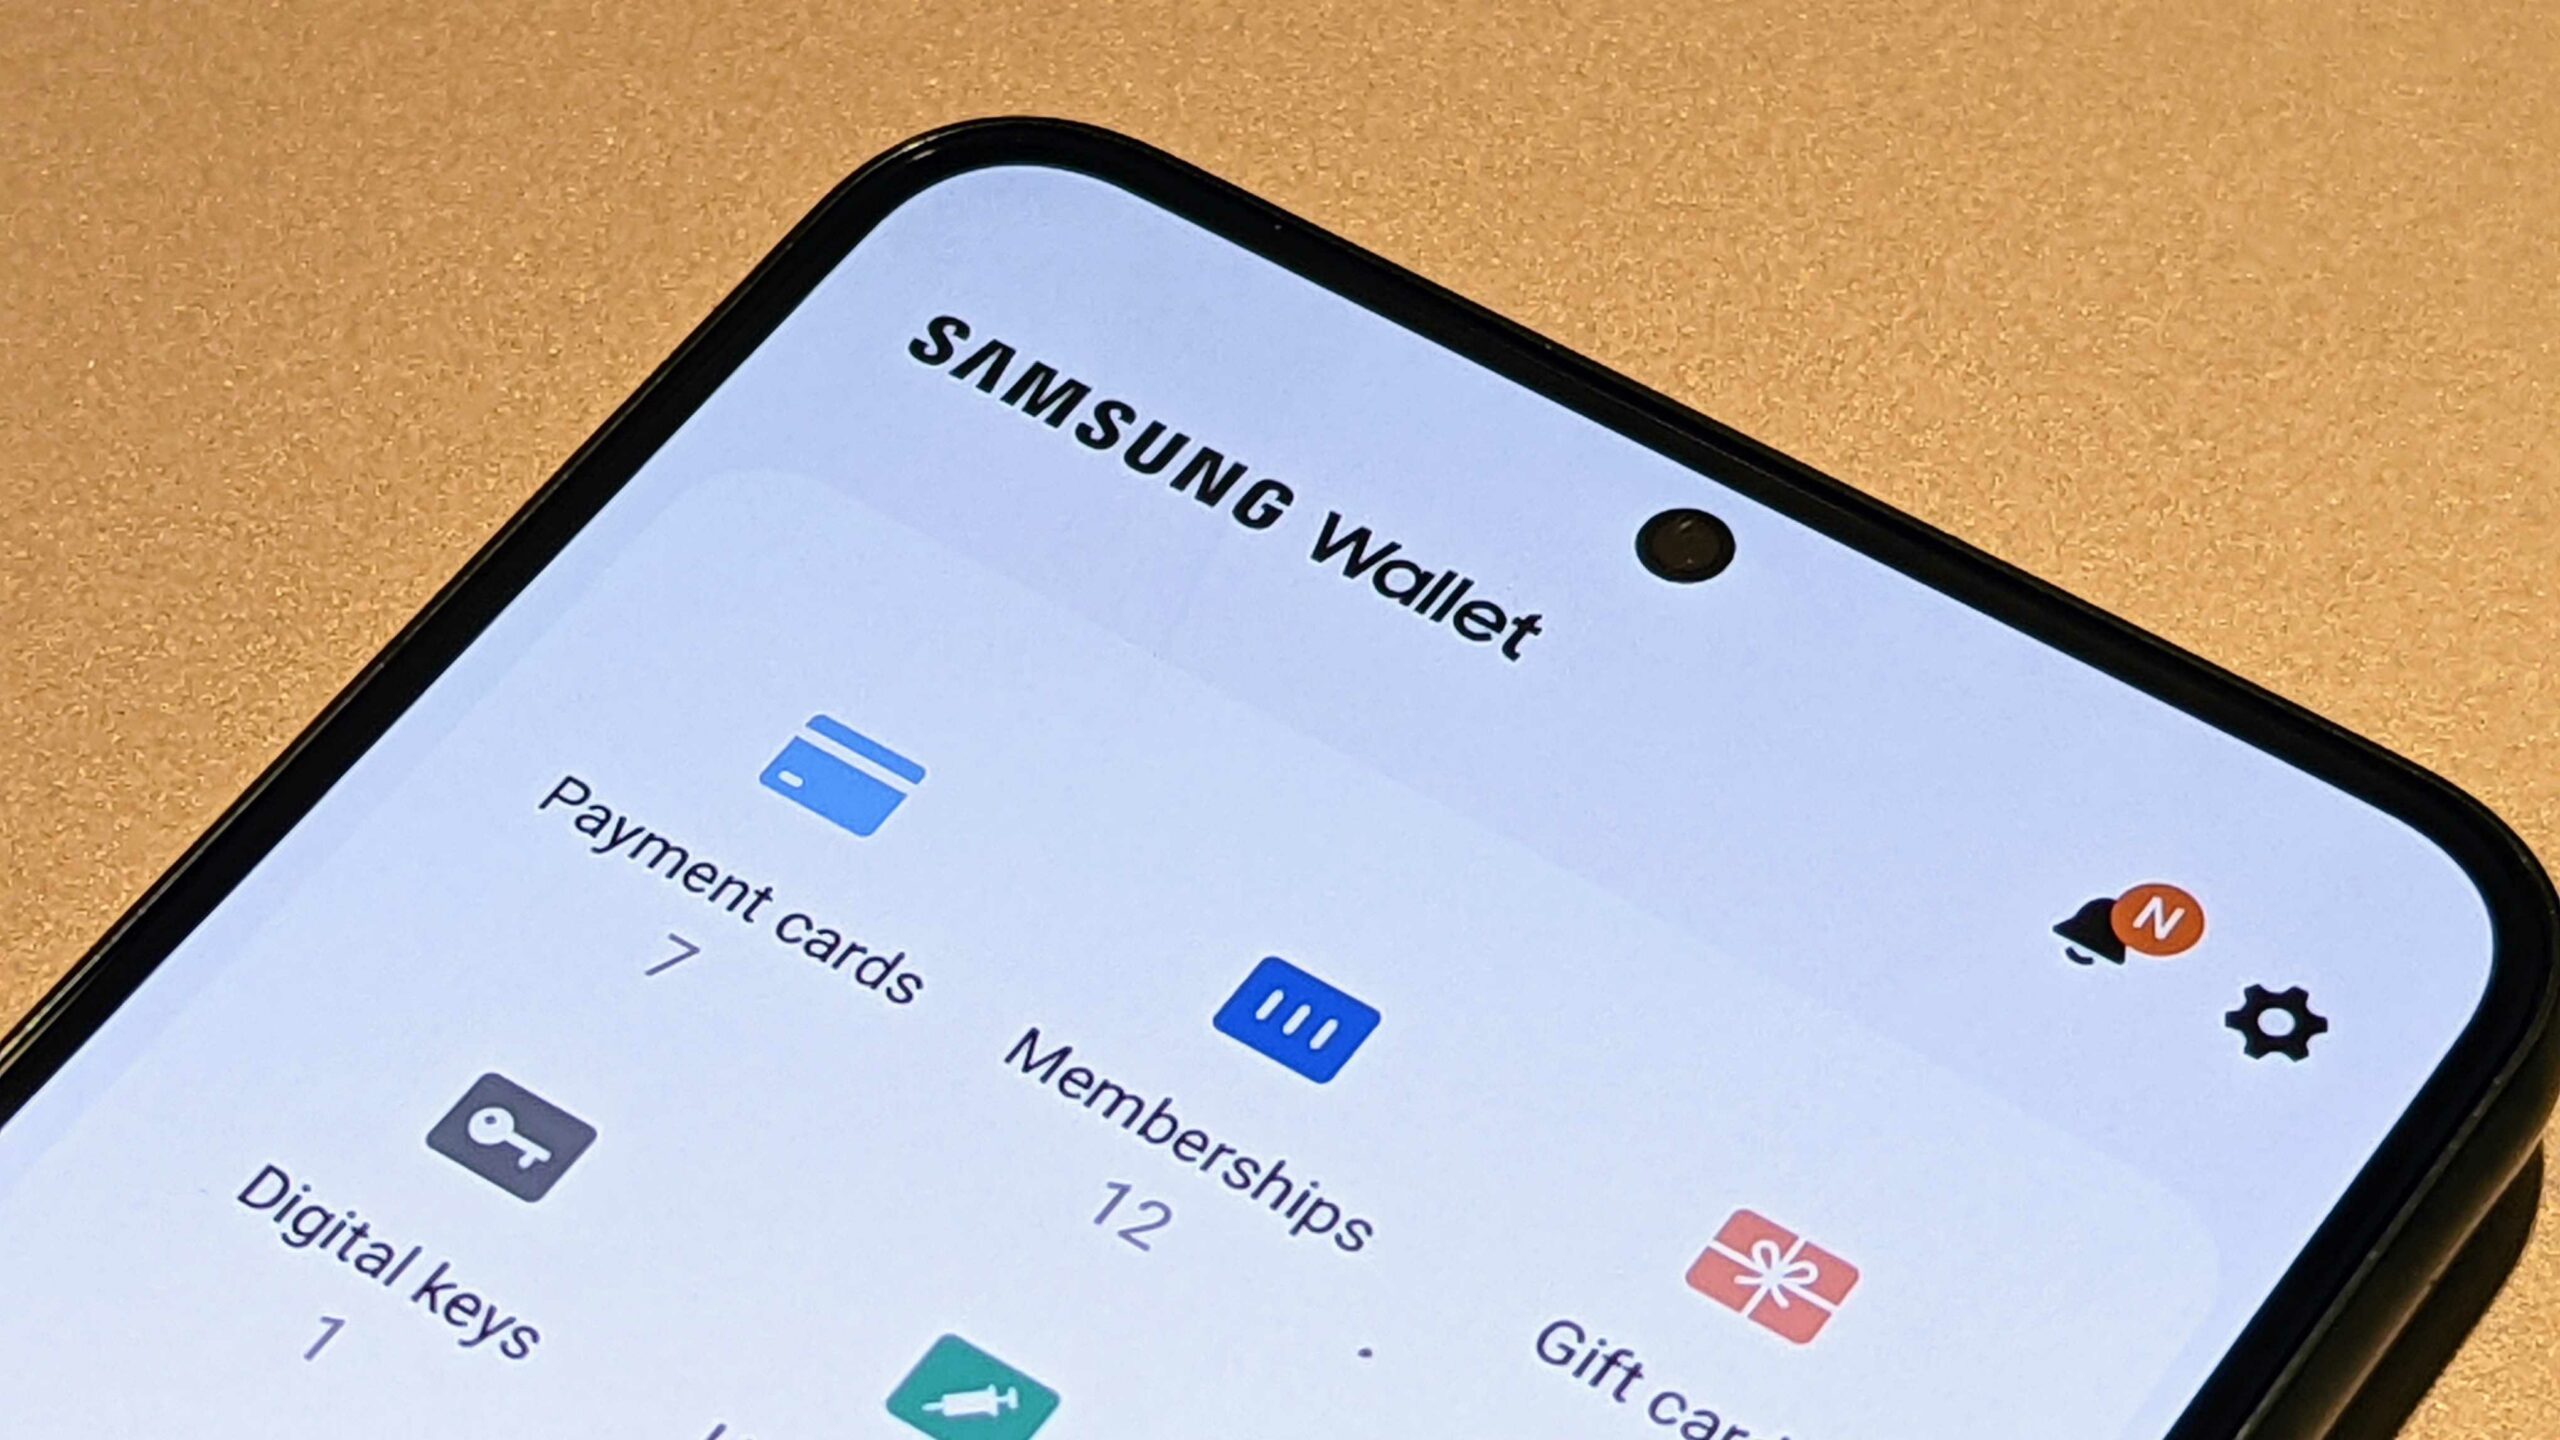 Come riparare il portafoglio Samsung che non funziona